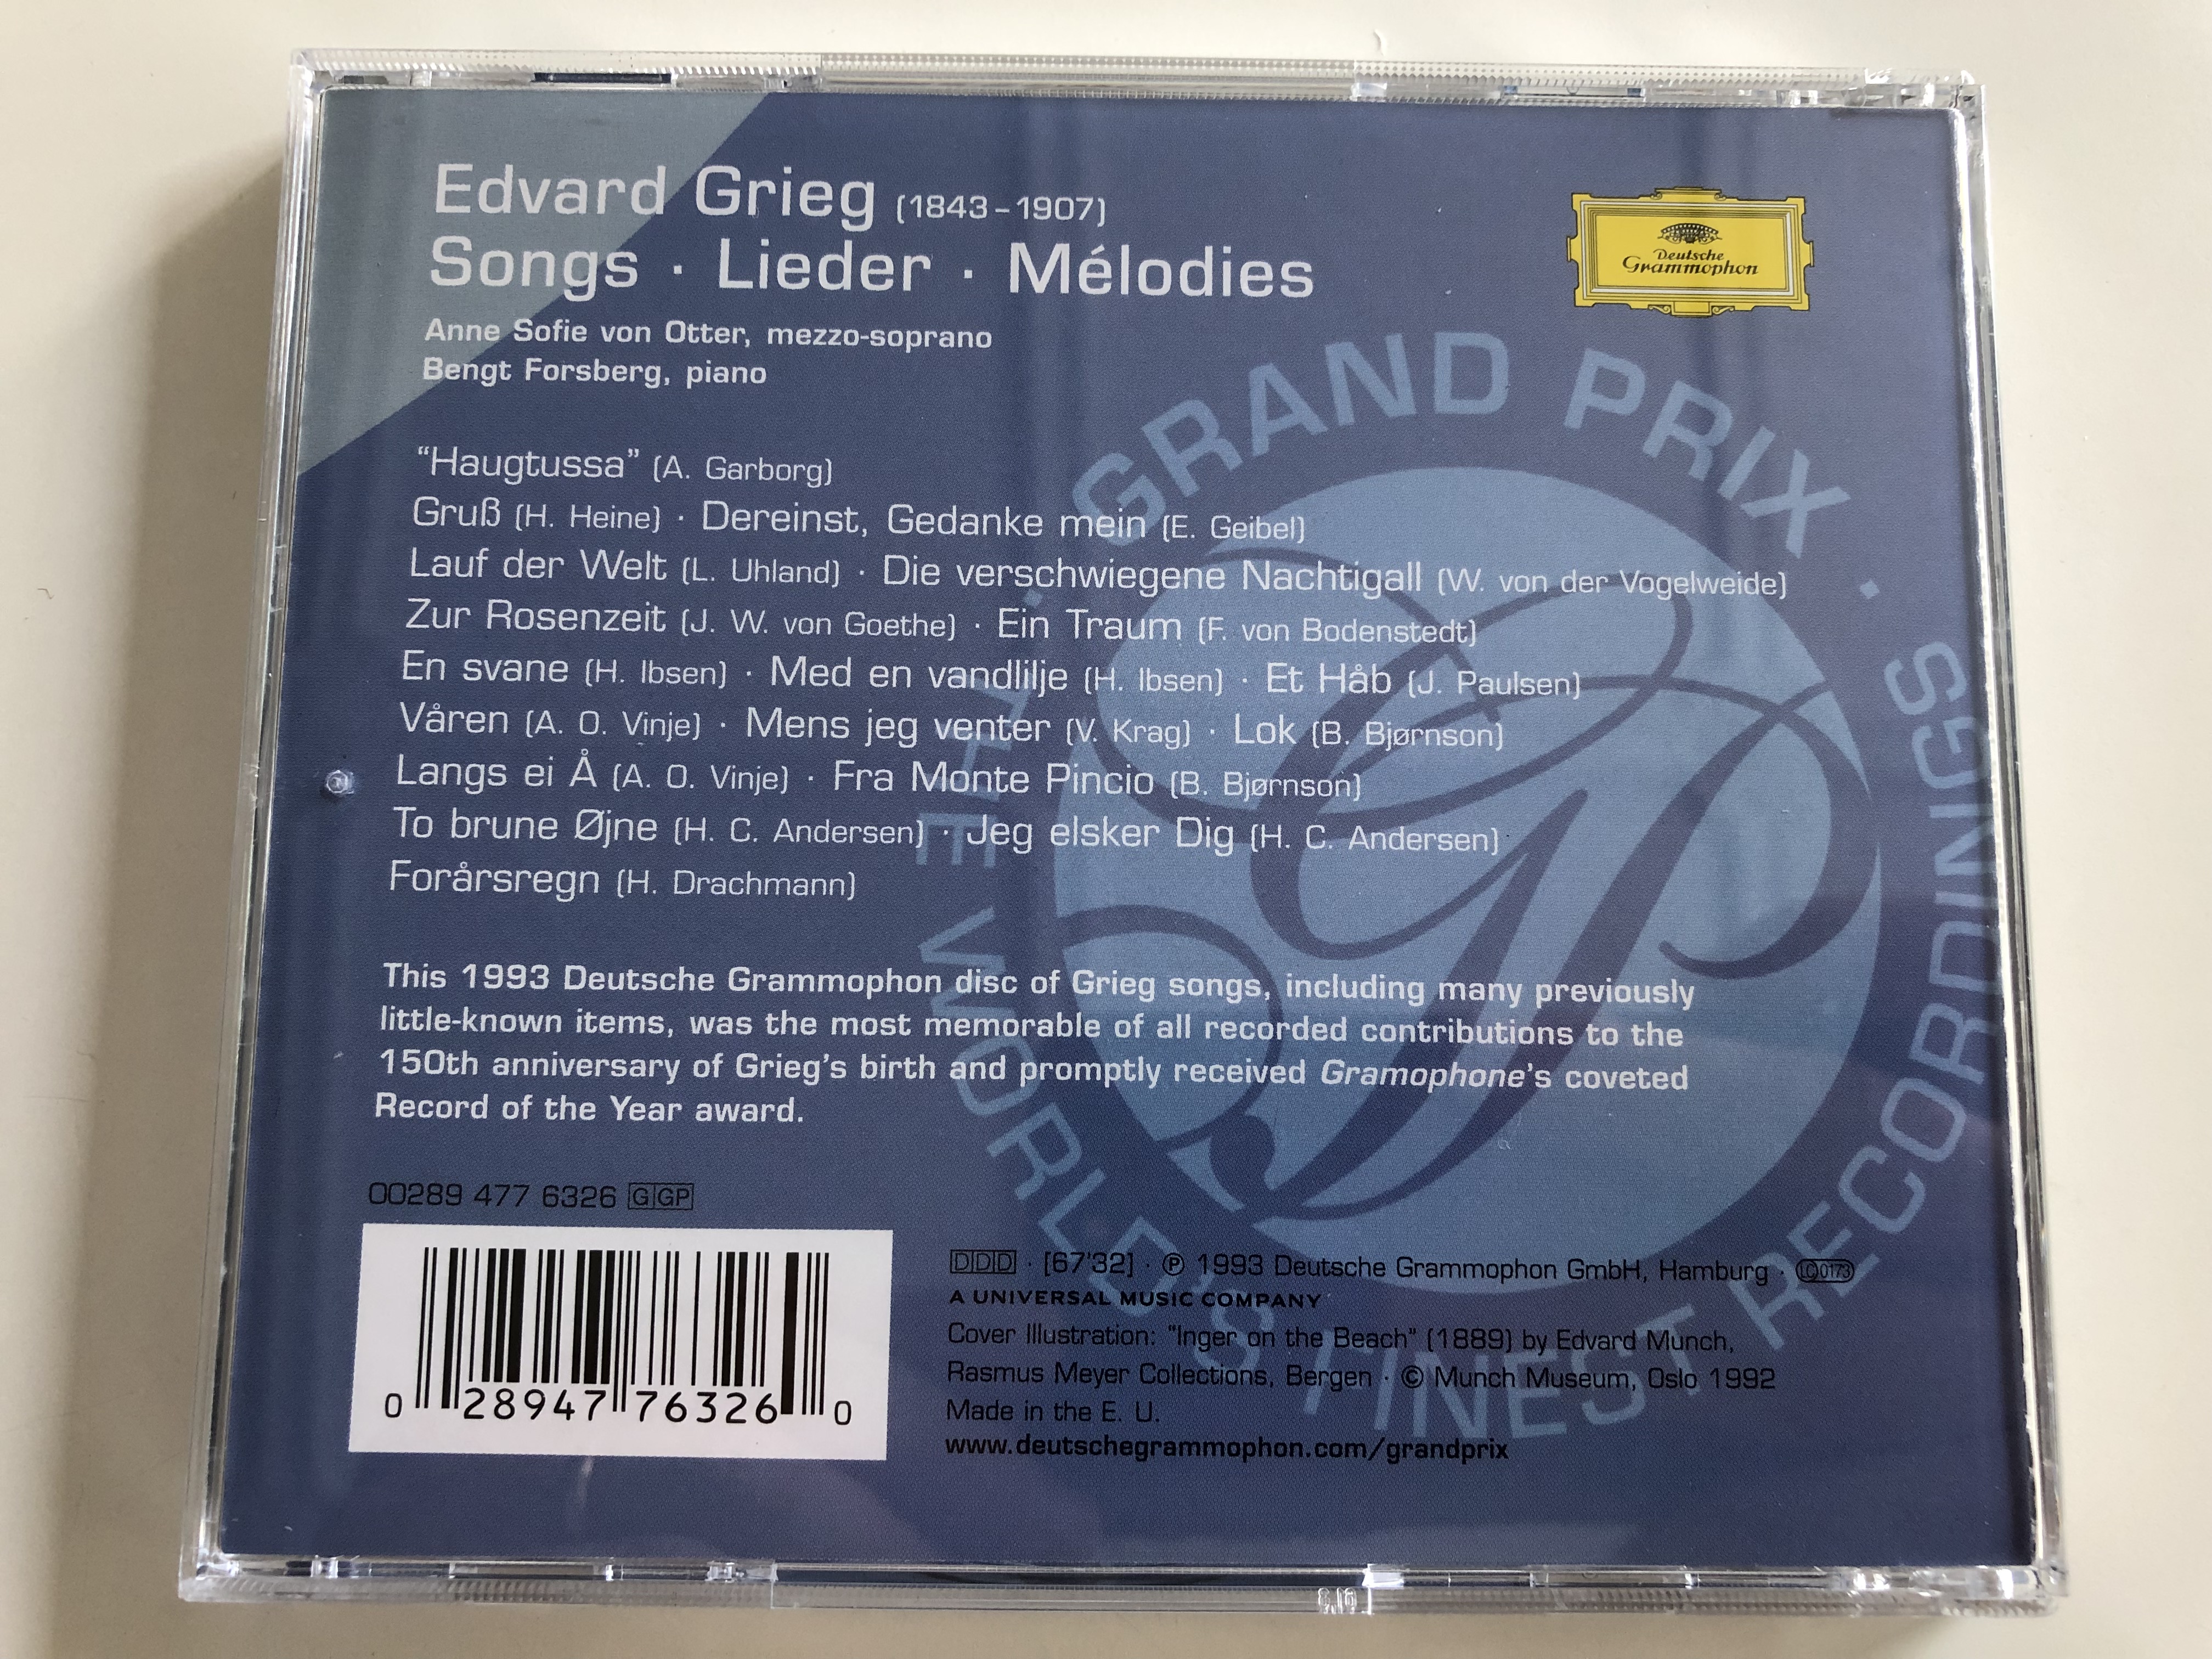 grieg-songs-lieder-anne-sofie-von-otter-mezzo-soprano-bengt-forsberg-piano-deutsche-grammophon-audio-cd-1993-9-.jpg